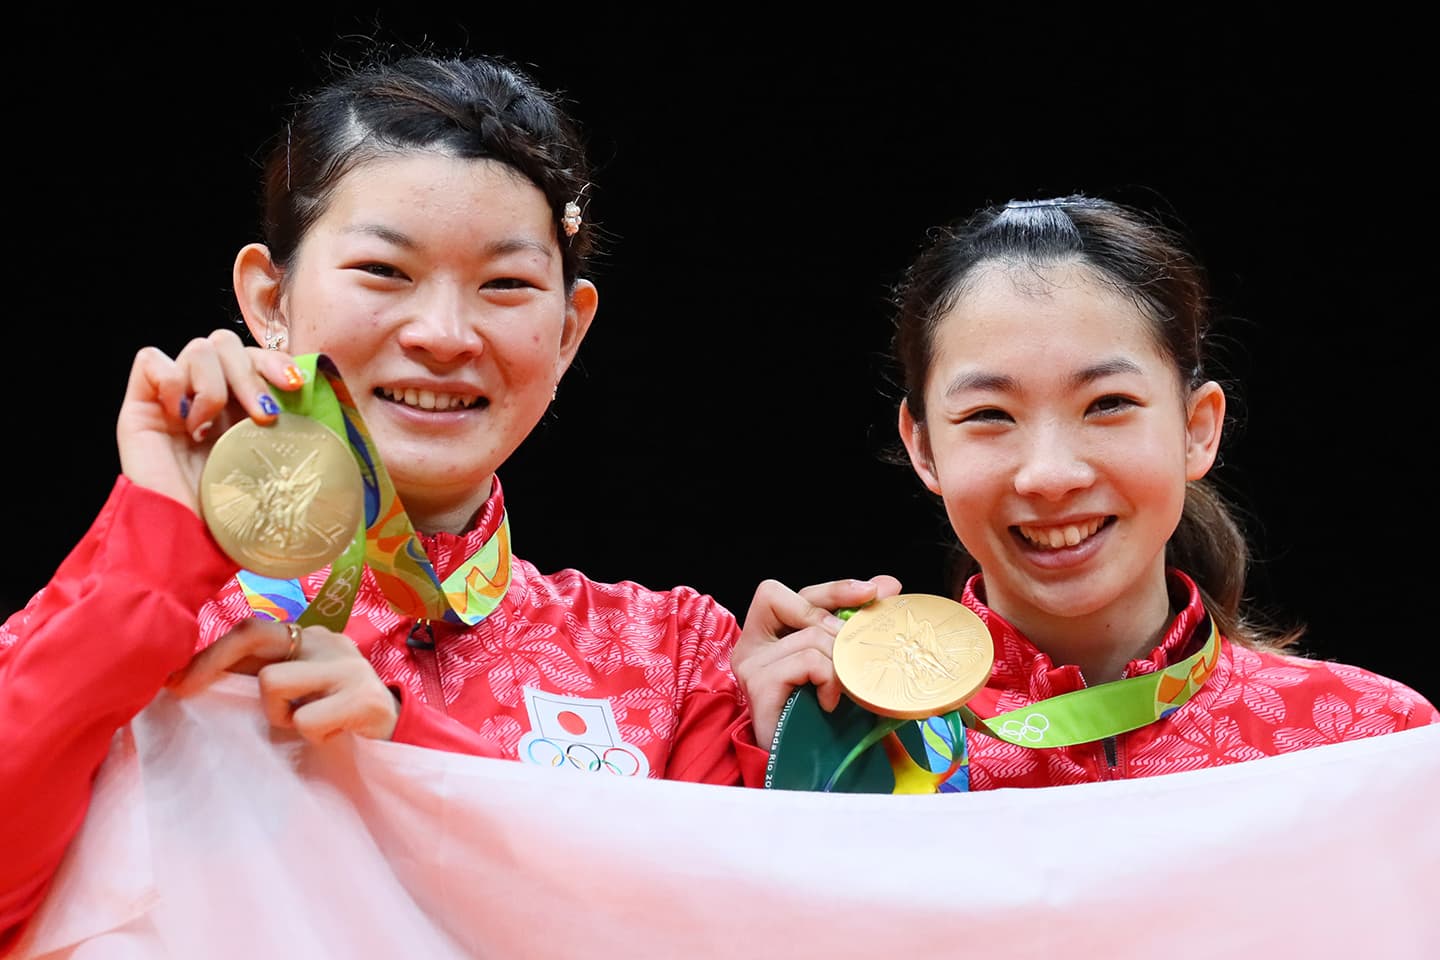 リオデジャネイロ2016大会  女子ダブルスで金メダルを獲得した髙橋礼華選手と松友美佐紀選手のペア